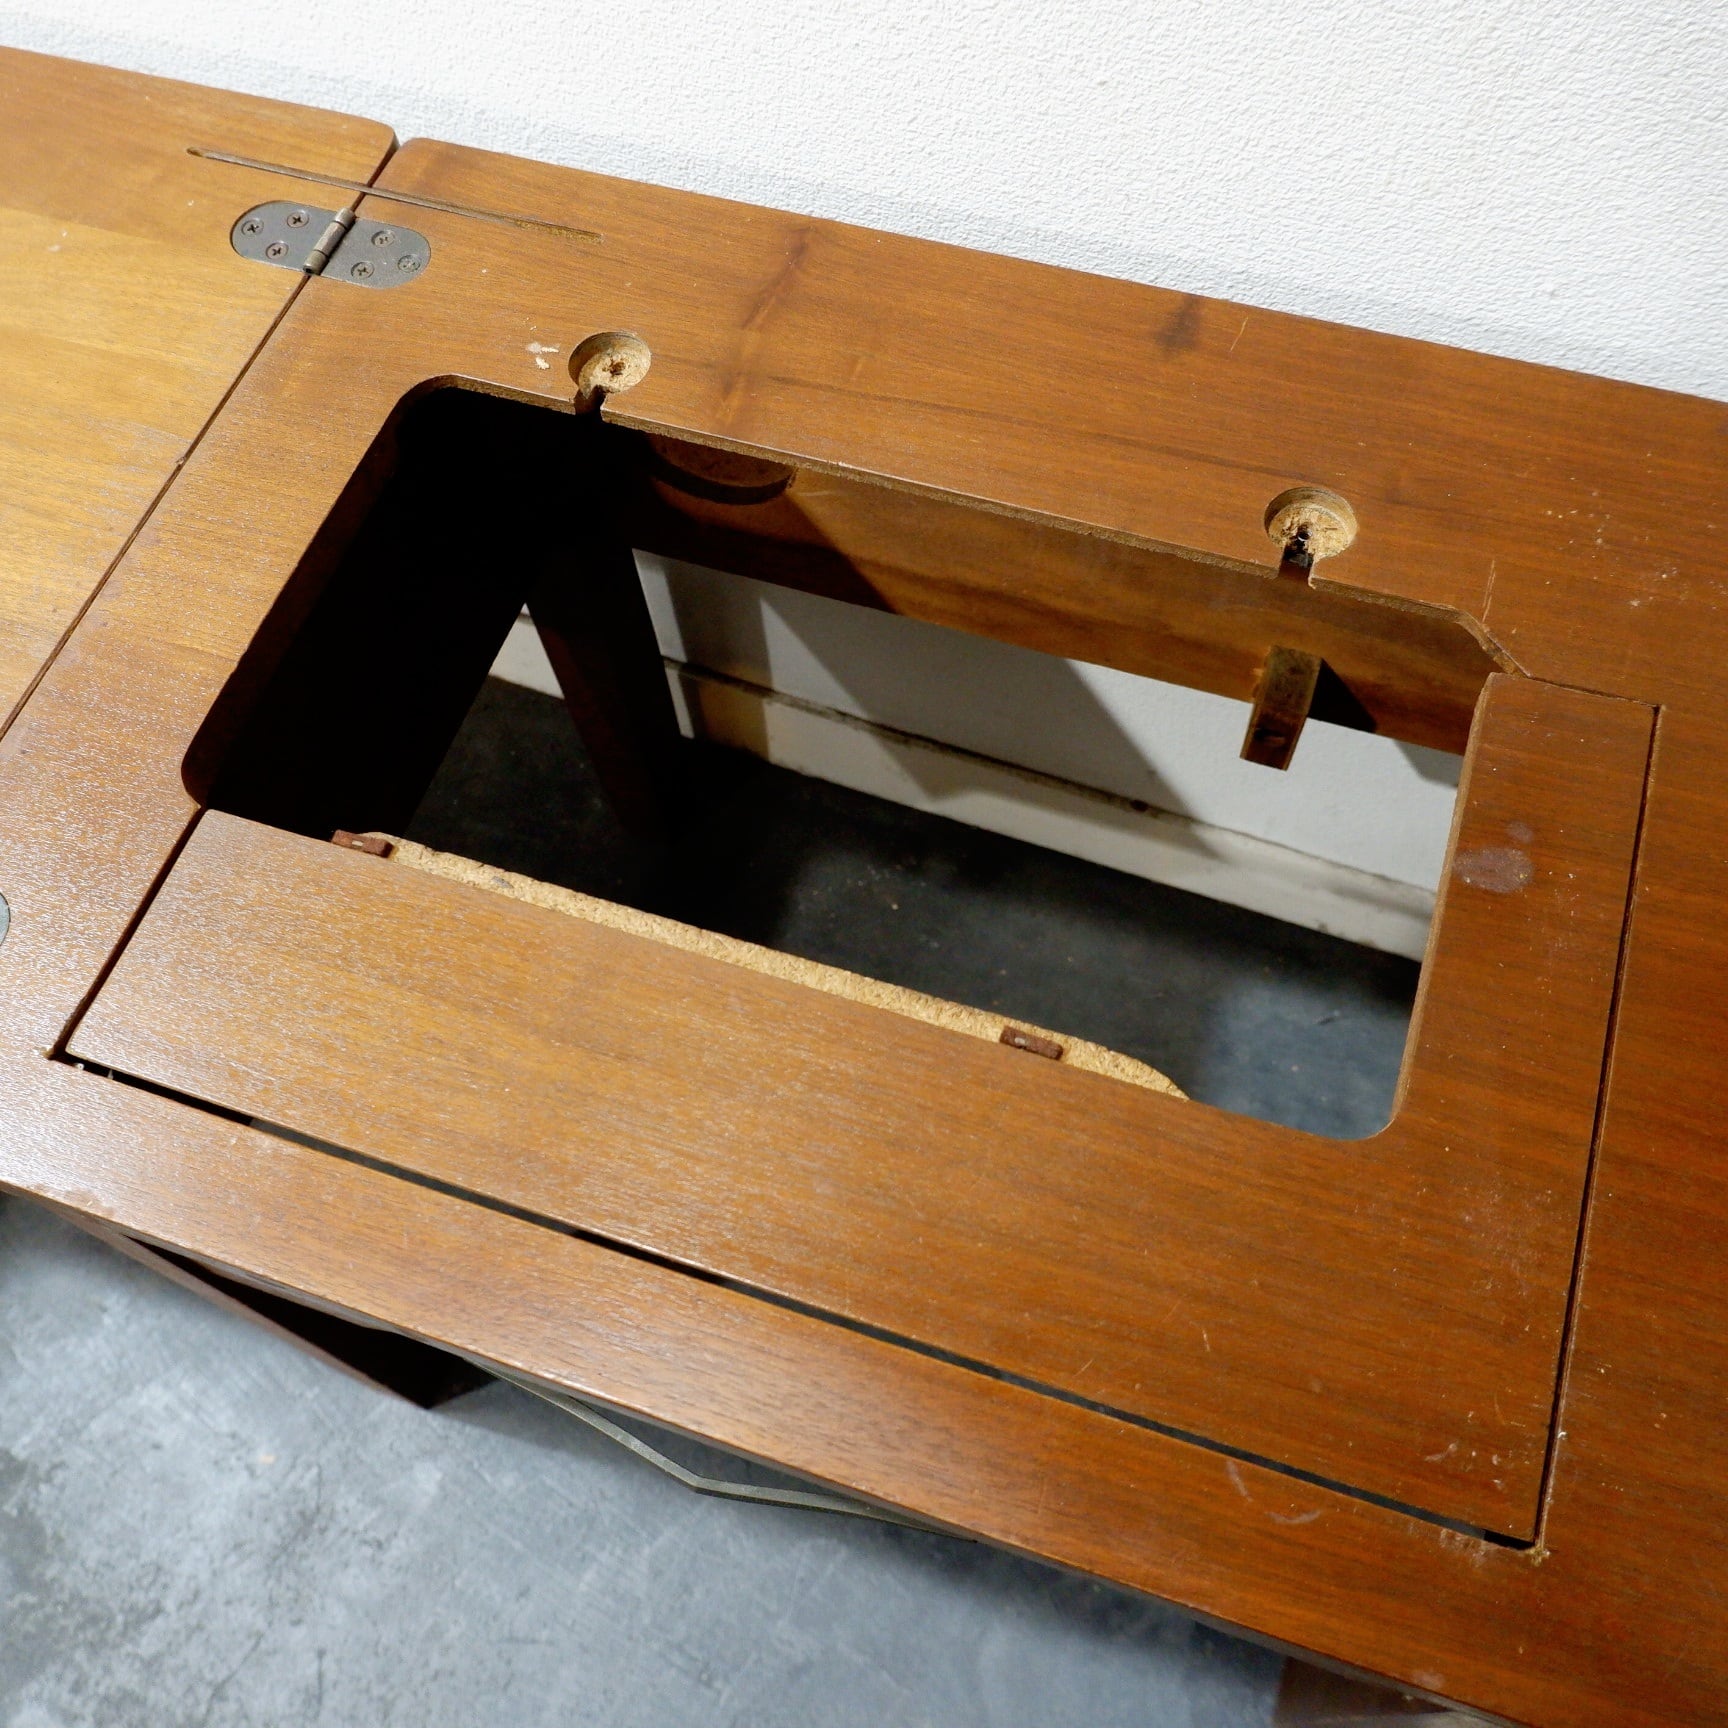 ヴィンテージ家具 木製 サイドテーブル ナイトテーブル ミシン台